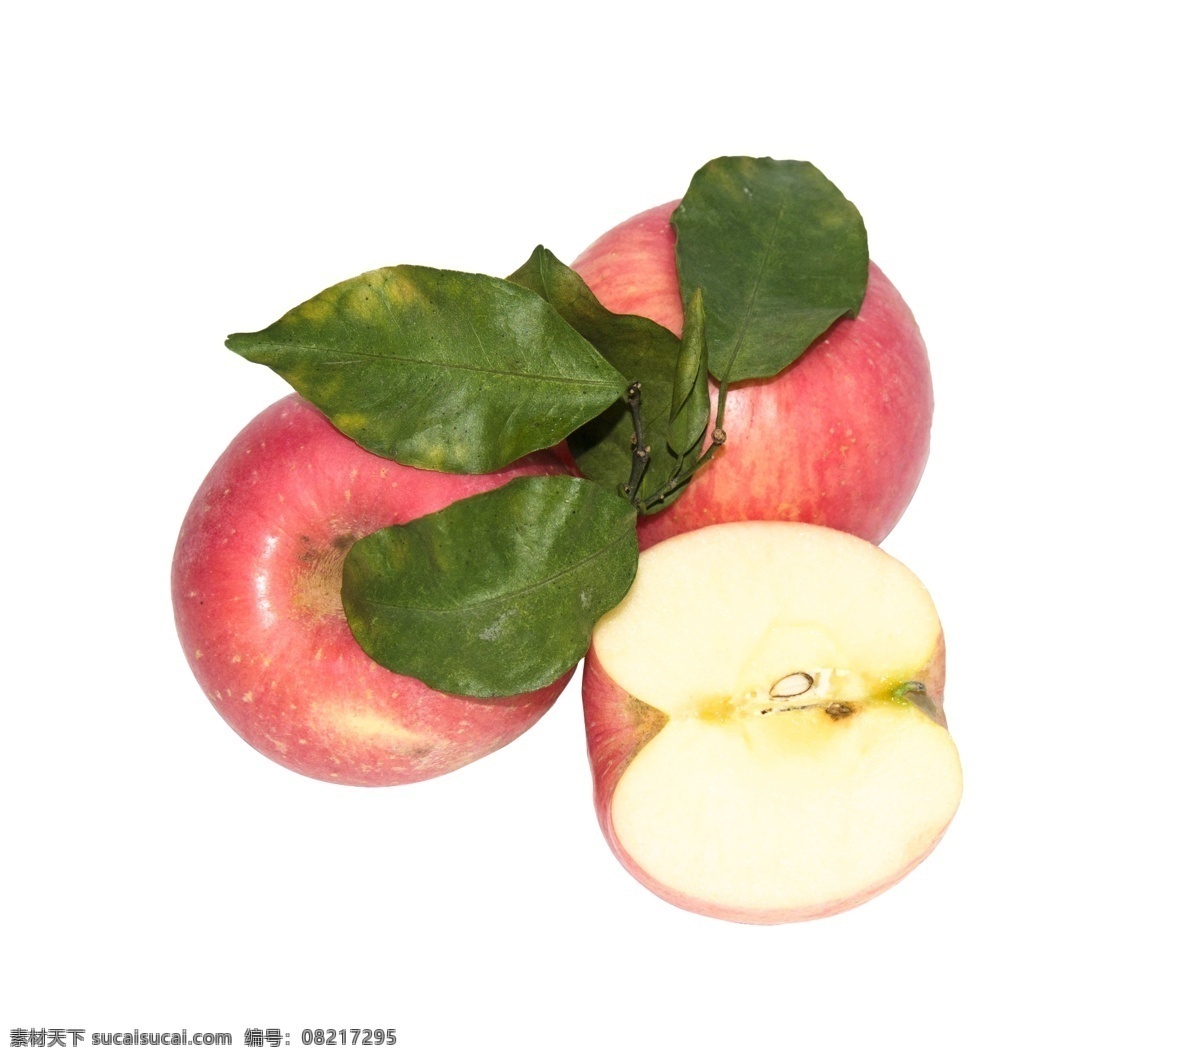 新鲜 美味 苹果 三个苹果 一半苹果 健康 食物 食品 营养 美食 绿色 瓜果 水果 好吃 可口